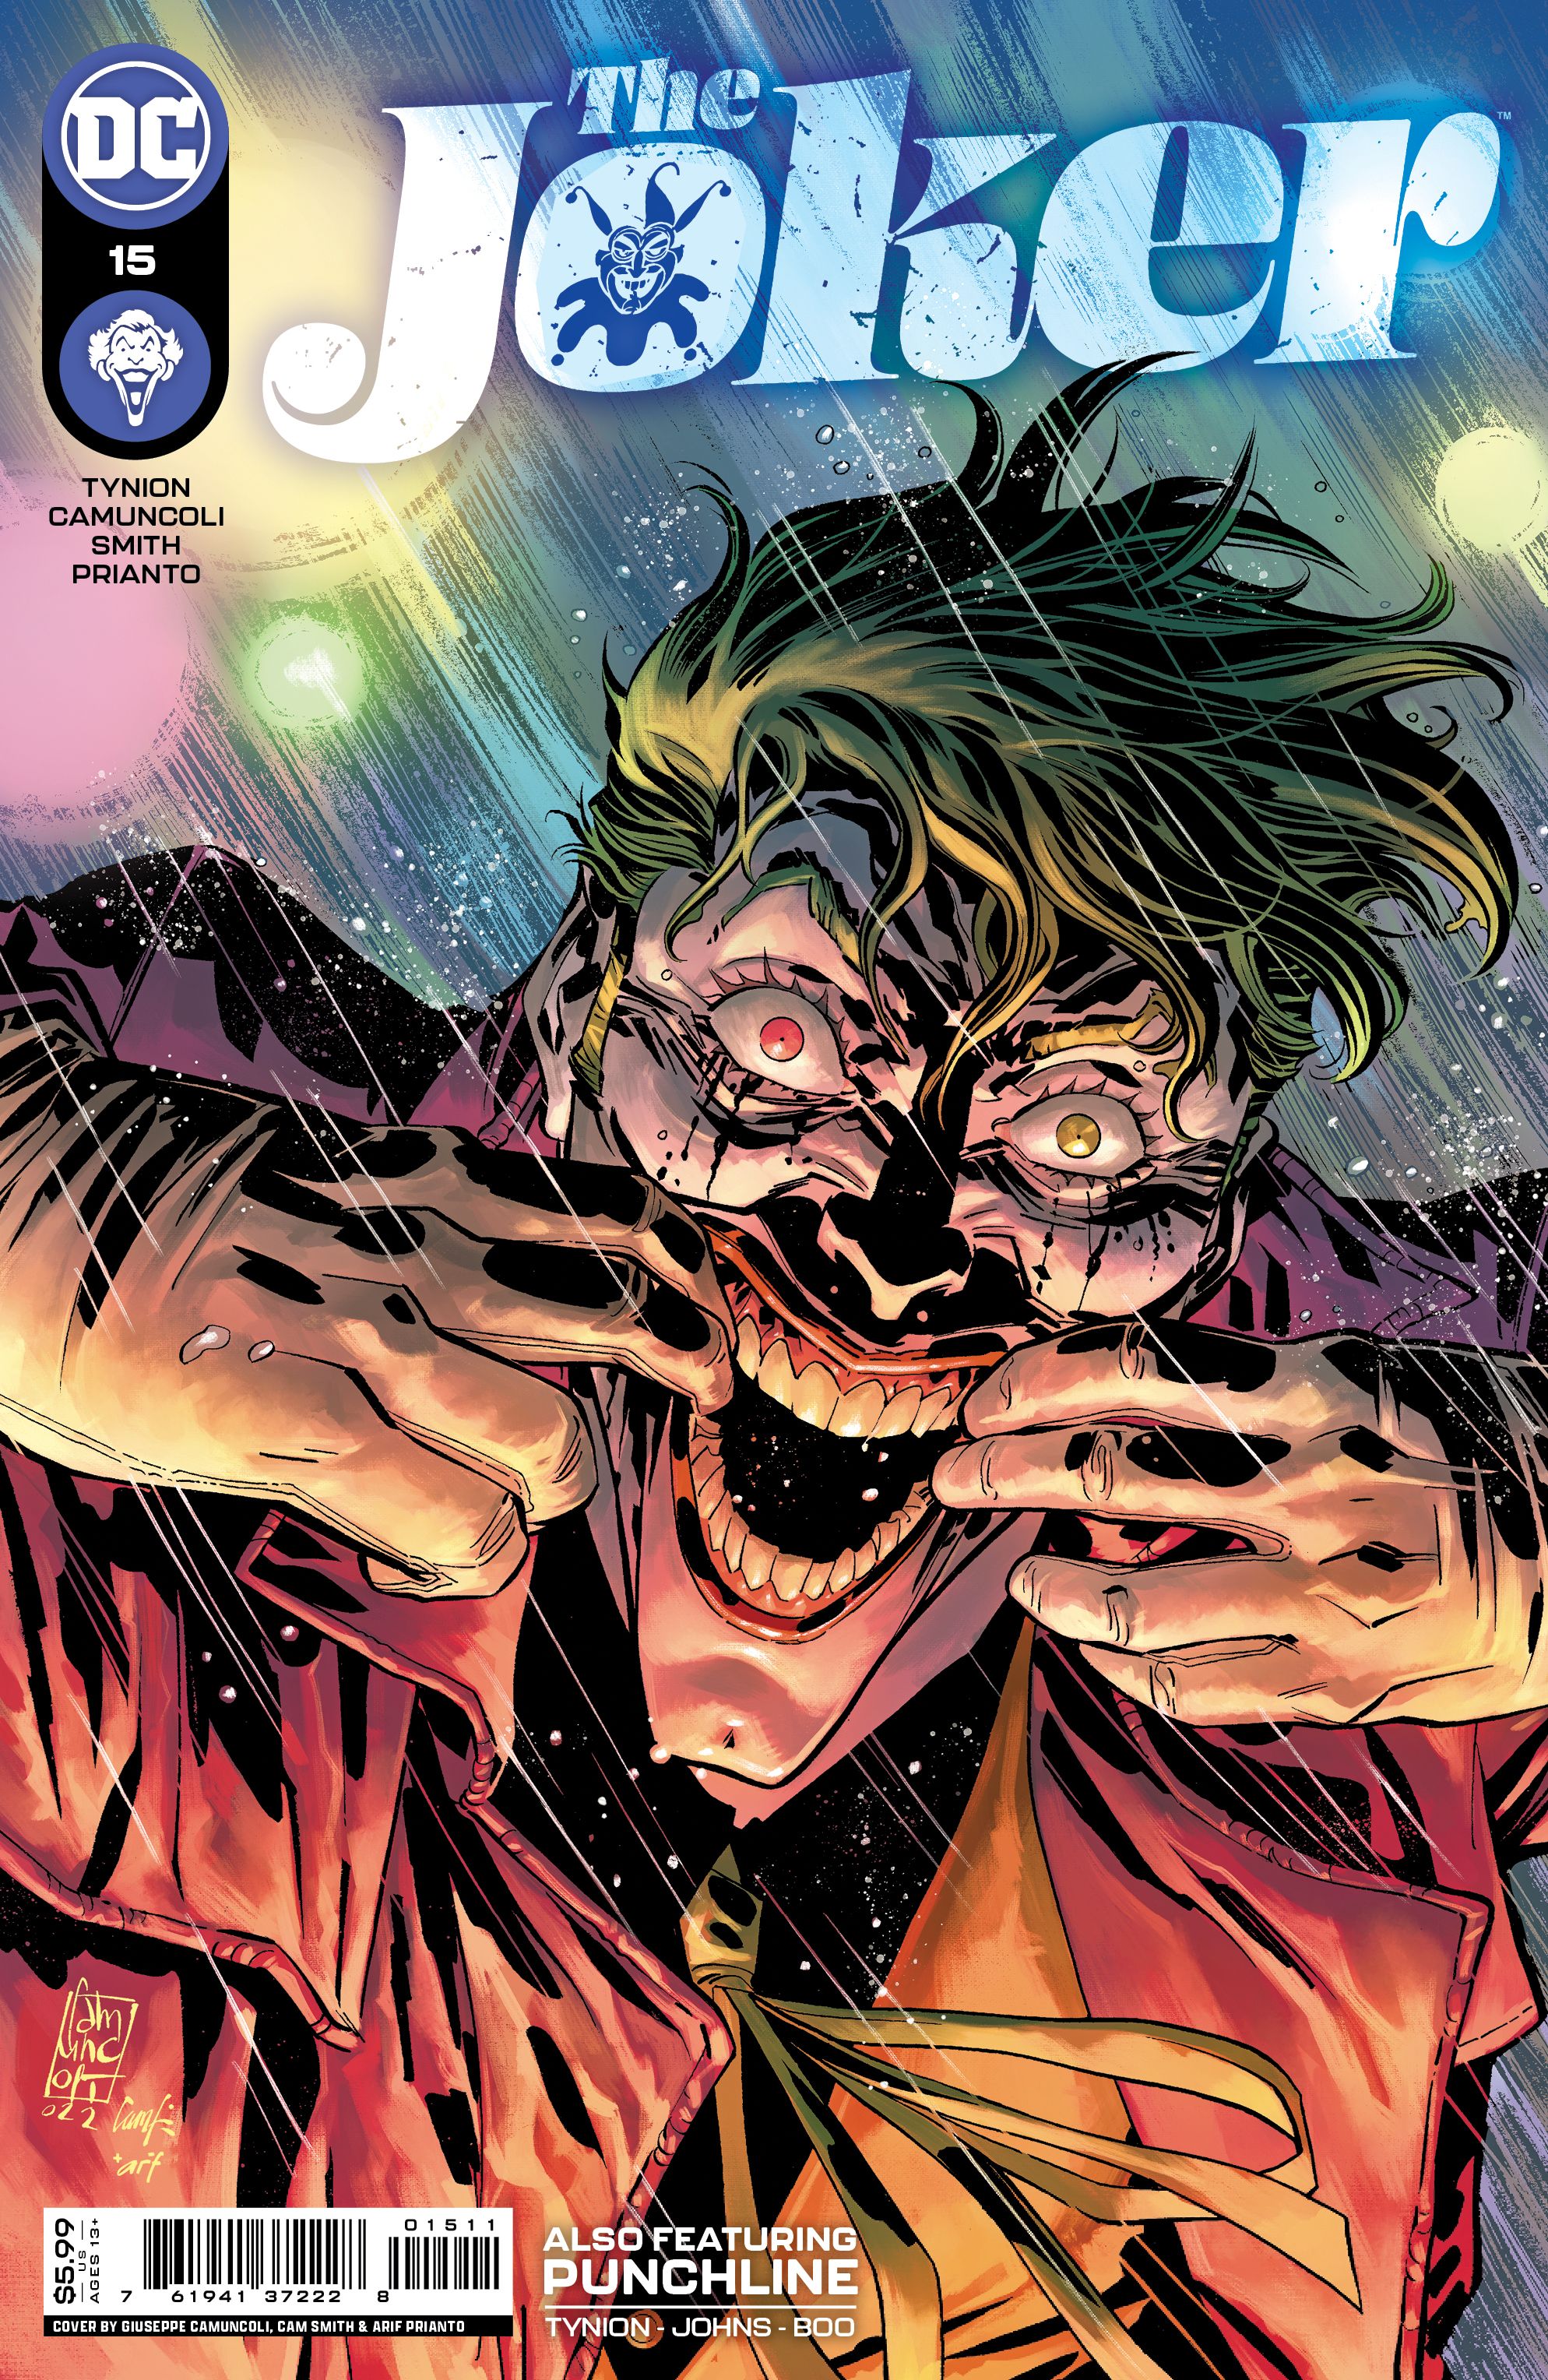 The Joker #15 Comic